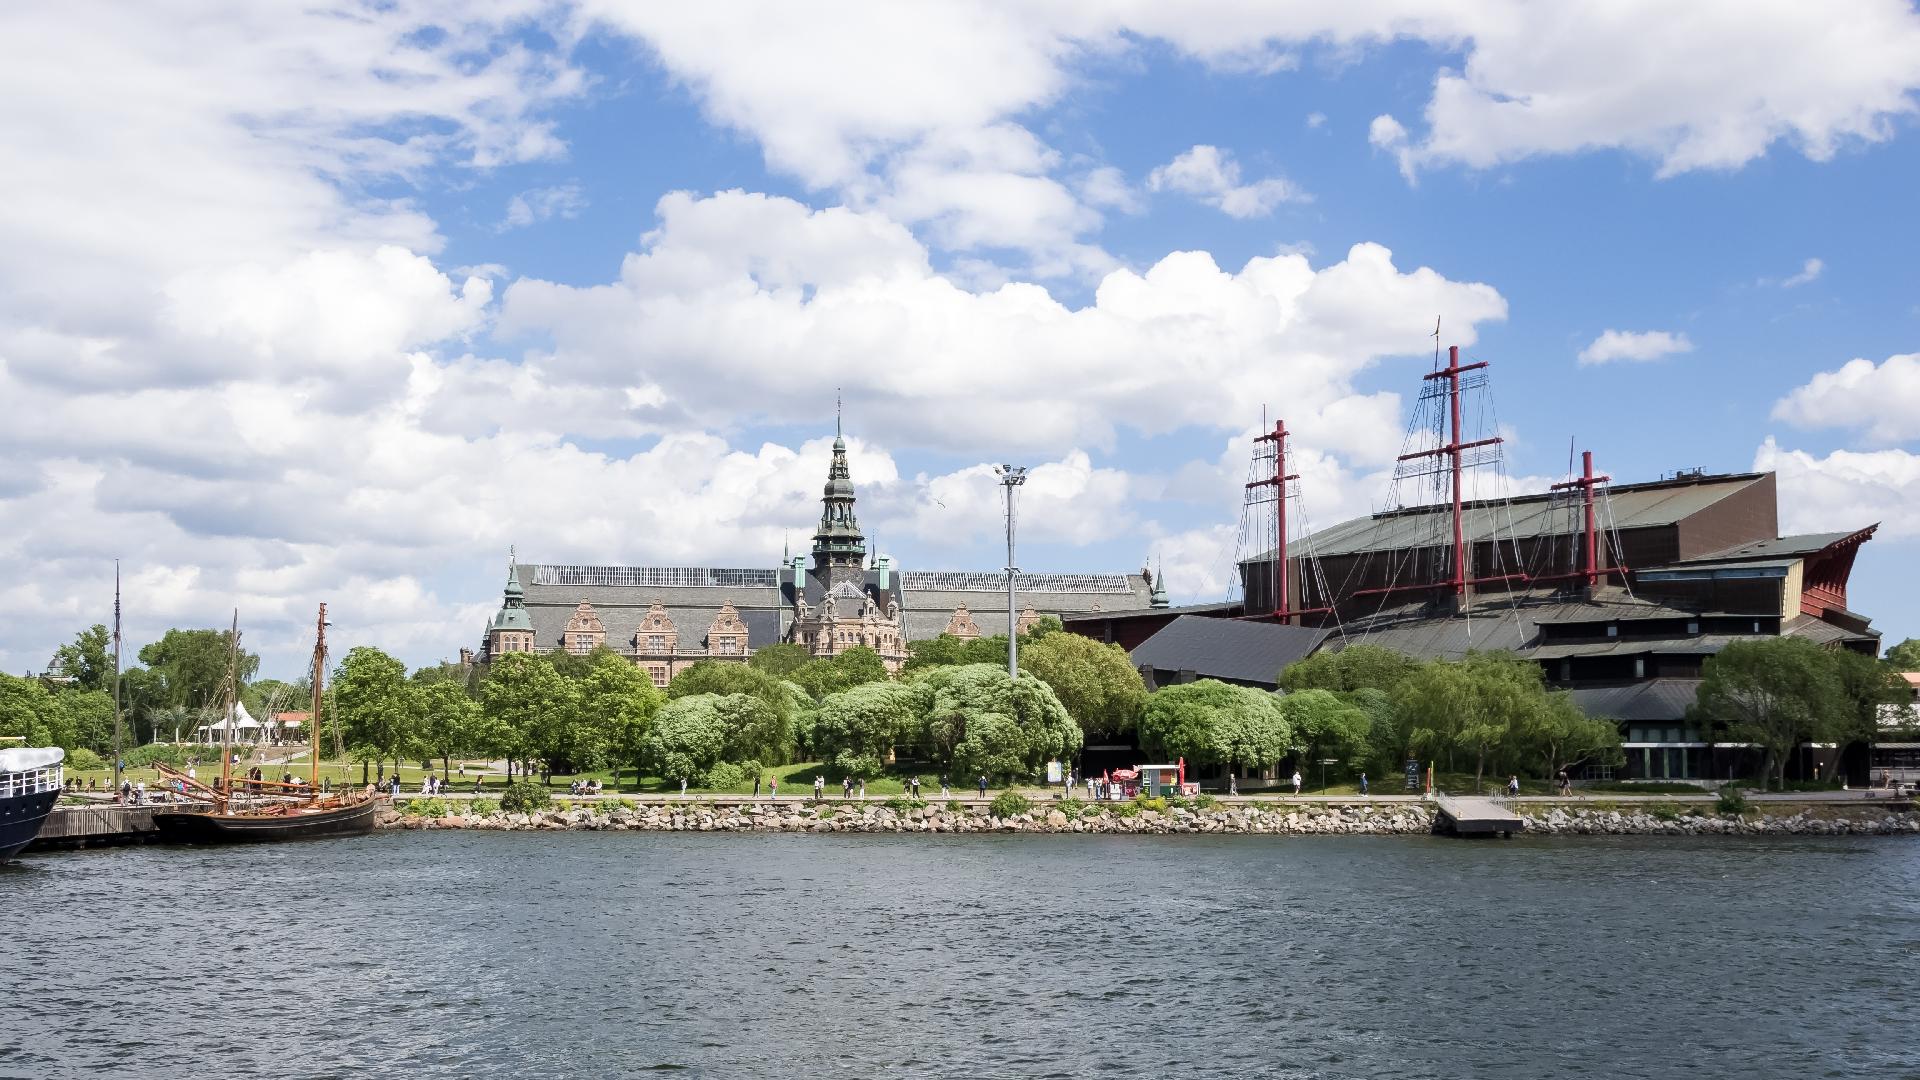 Vista de Djurgården, una isla en el centro de Estocolmo, Suecia